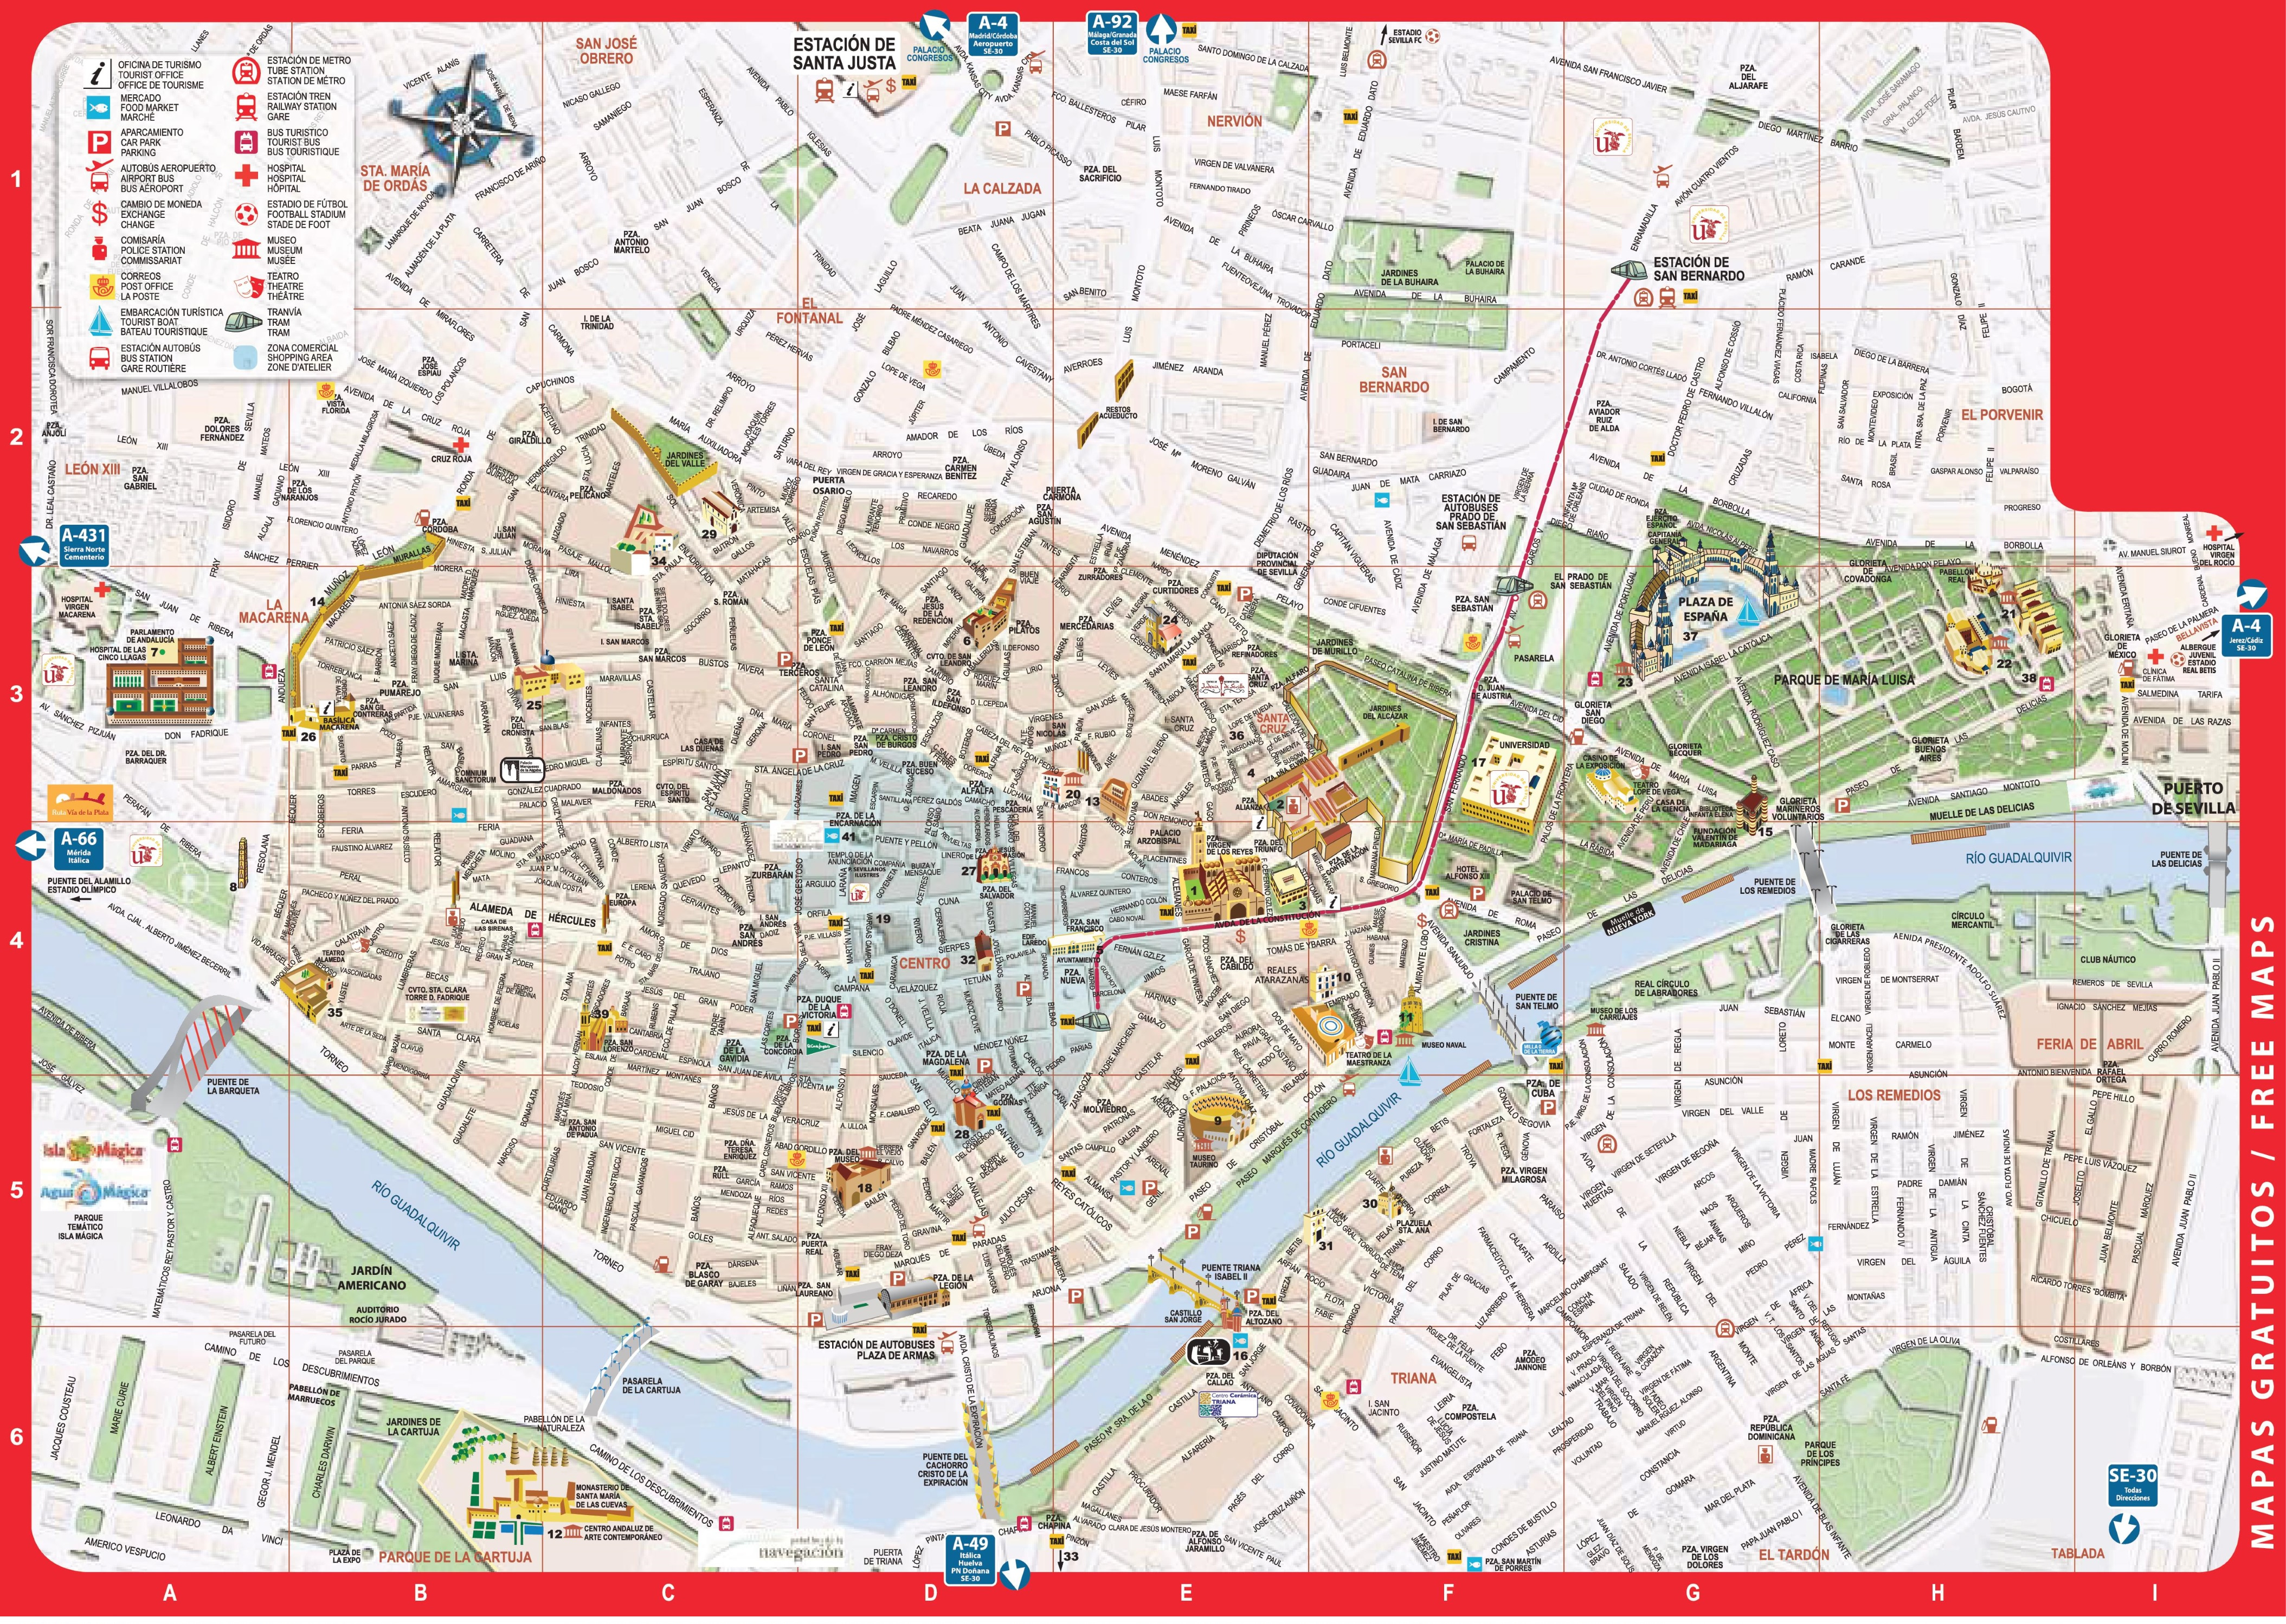 Sevilla Recorrido A Pie De Mapa Mapa De Sevilla Walking Tour | Images ...